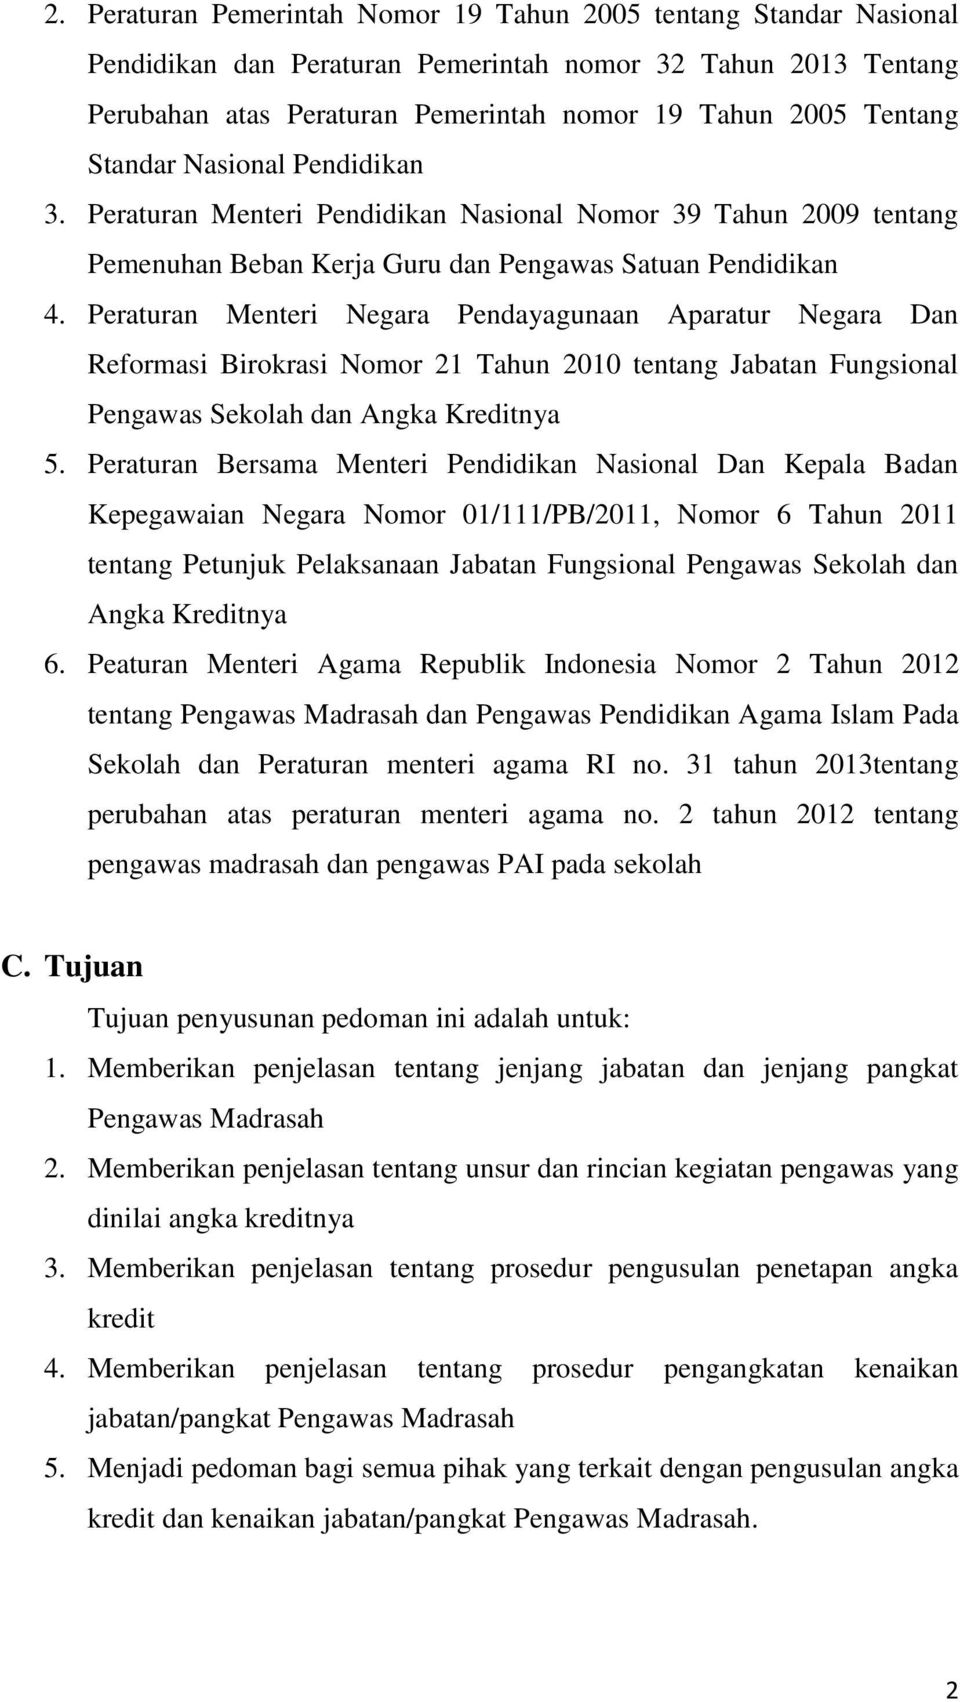 Peraturan Menteri Negara Pendayagunaan Aparatur Negara Dan Reformasi Birokrasi Nomor 21 Tahun 2010 tentang Jabatan Fungsional Pengawas Sekolah dan Angka Kreditnya 5.